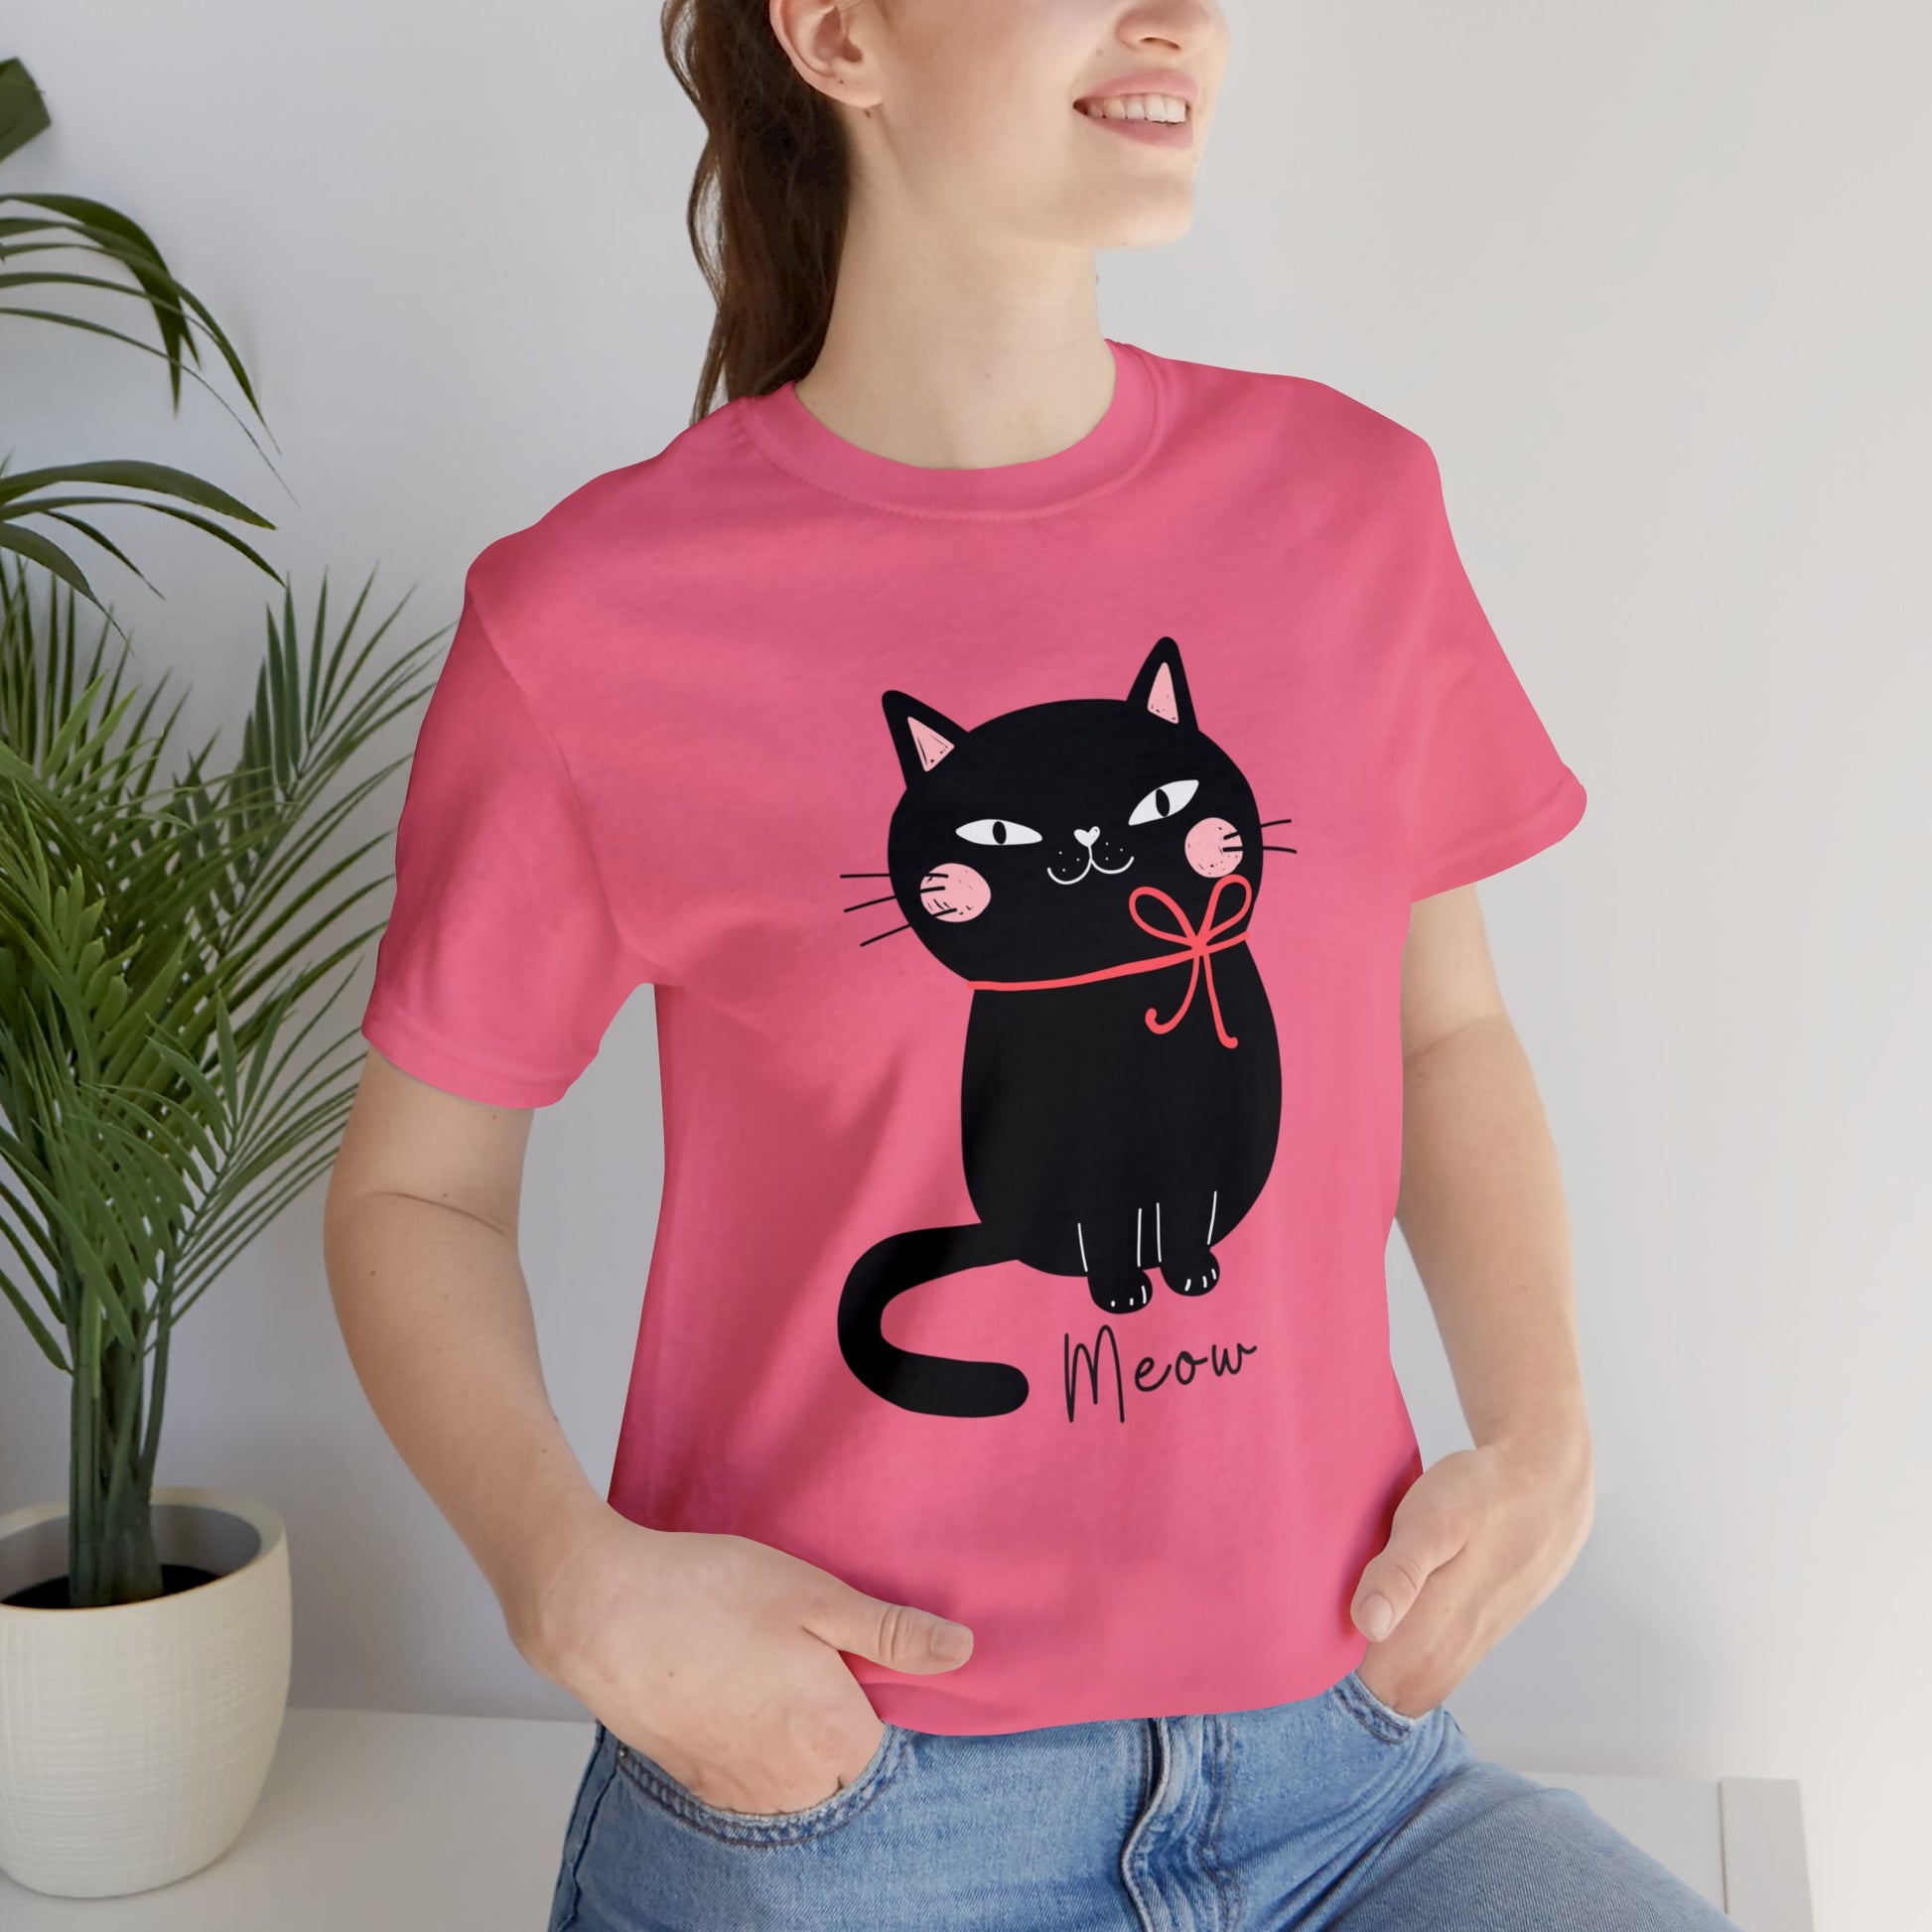 Cute Black cat Christmas Shirt, Kawaii cat xmas shirt, Funny cat Christmas T-shirt, cat cozy tee shirt, cat lover gift, black cat mom gift